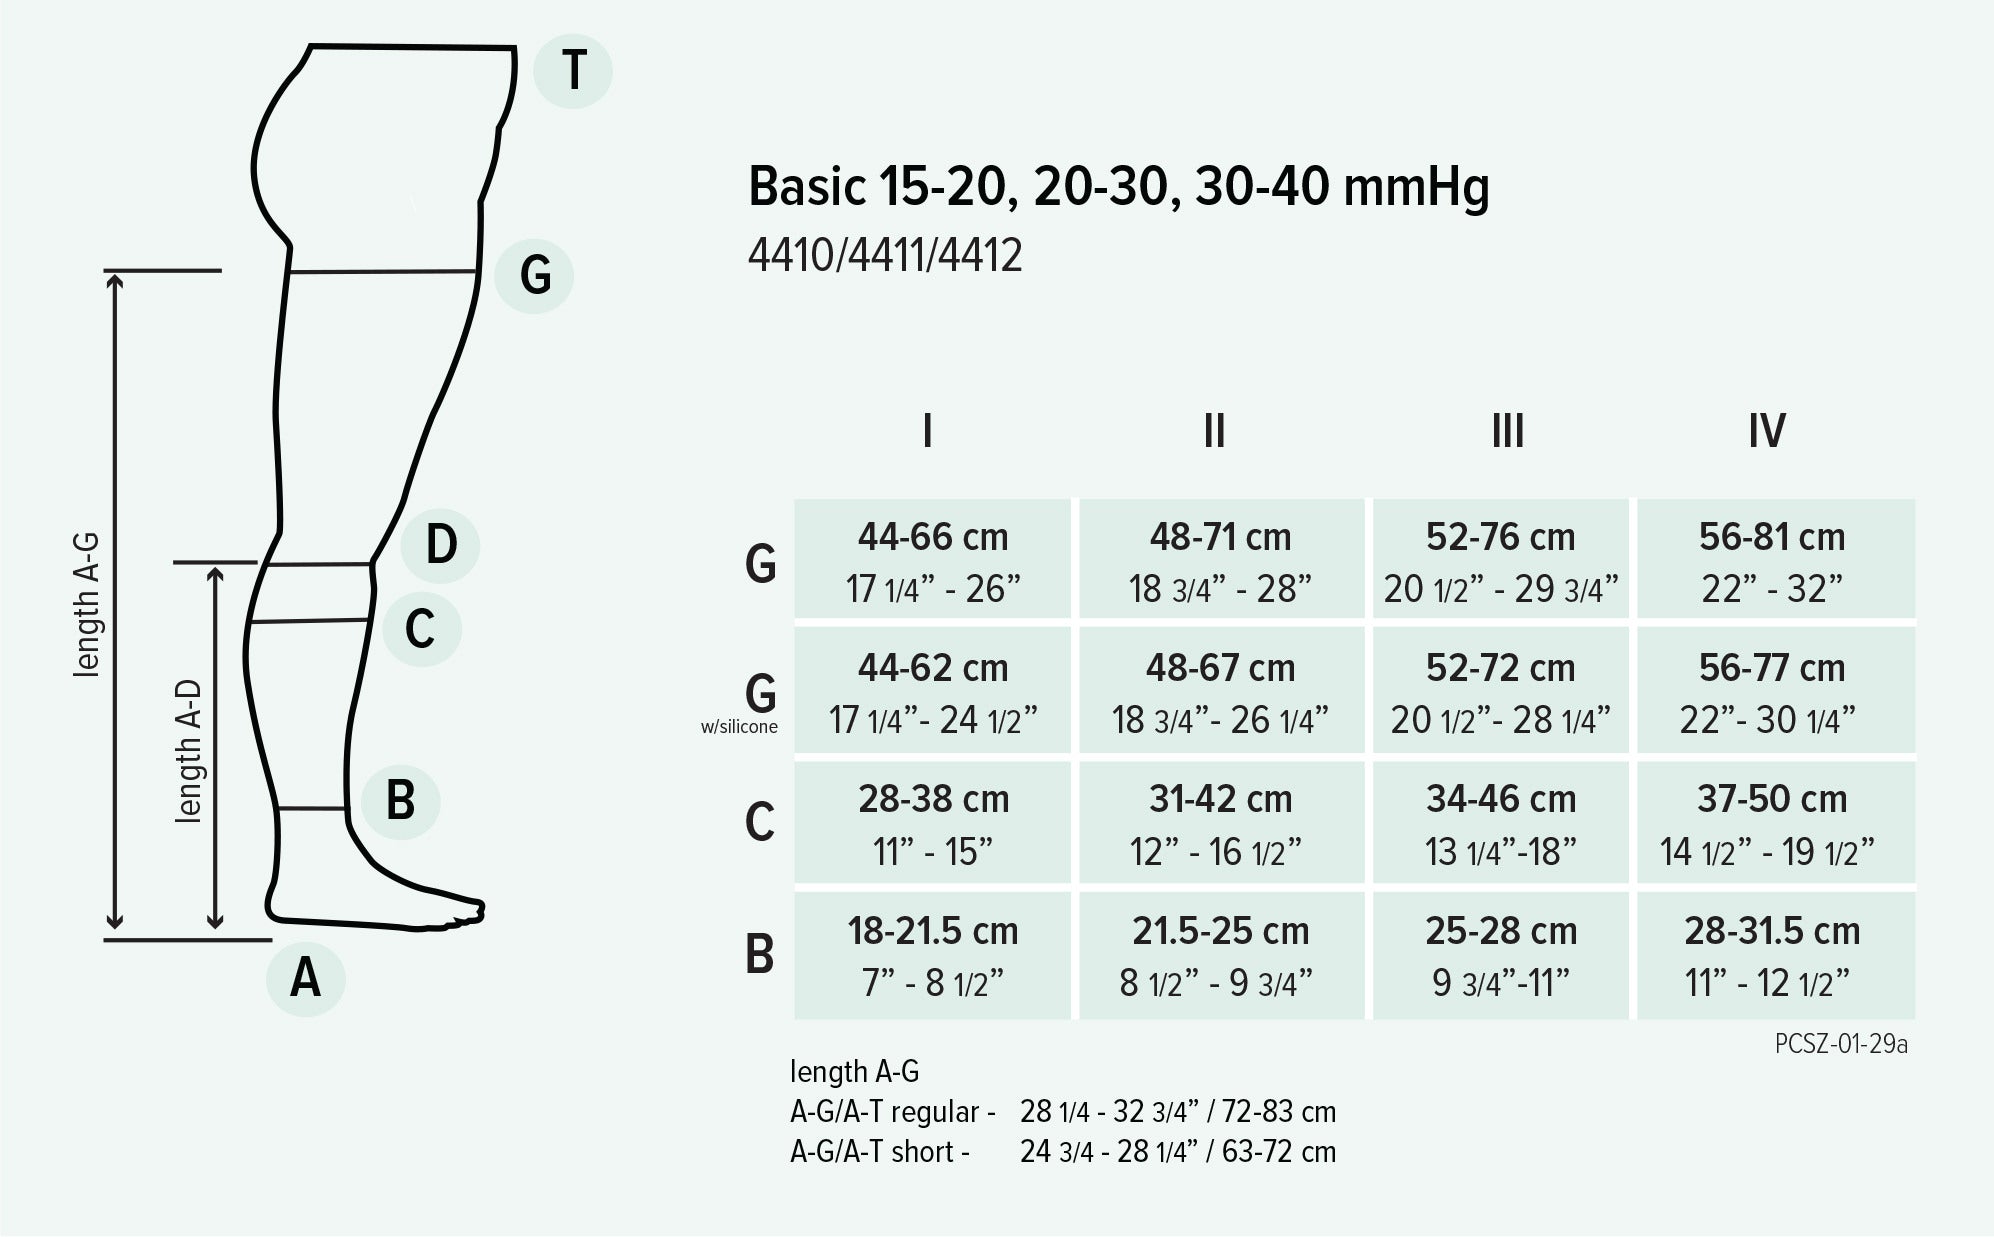 Juzo Basic Knee High 20-30 mmHg Full Foot Stockings Size Chart